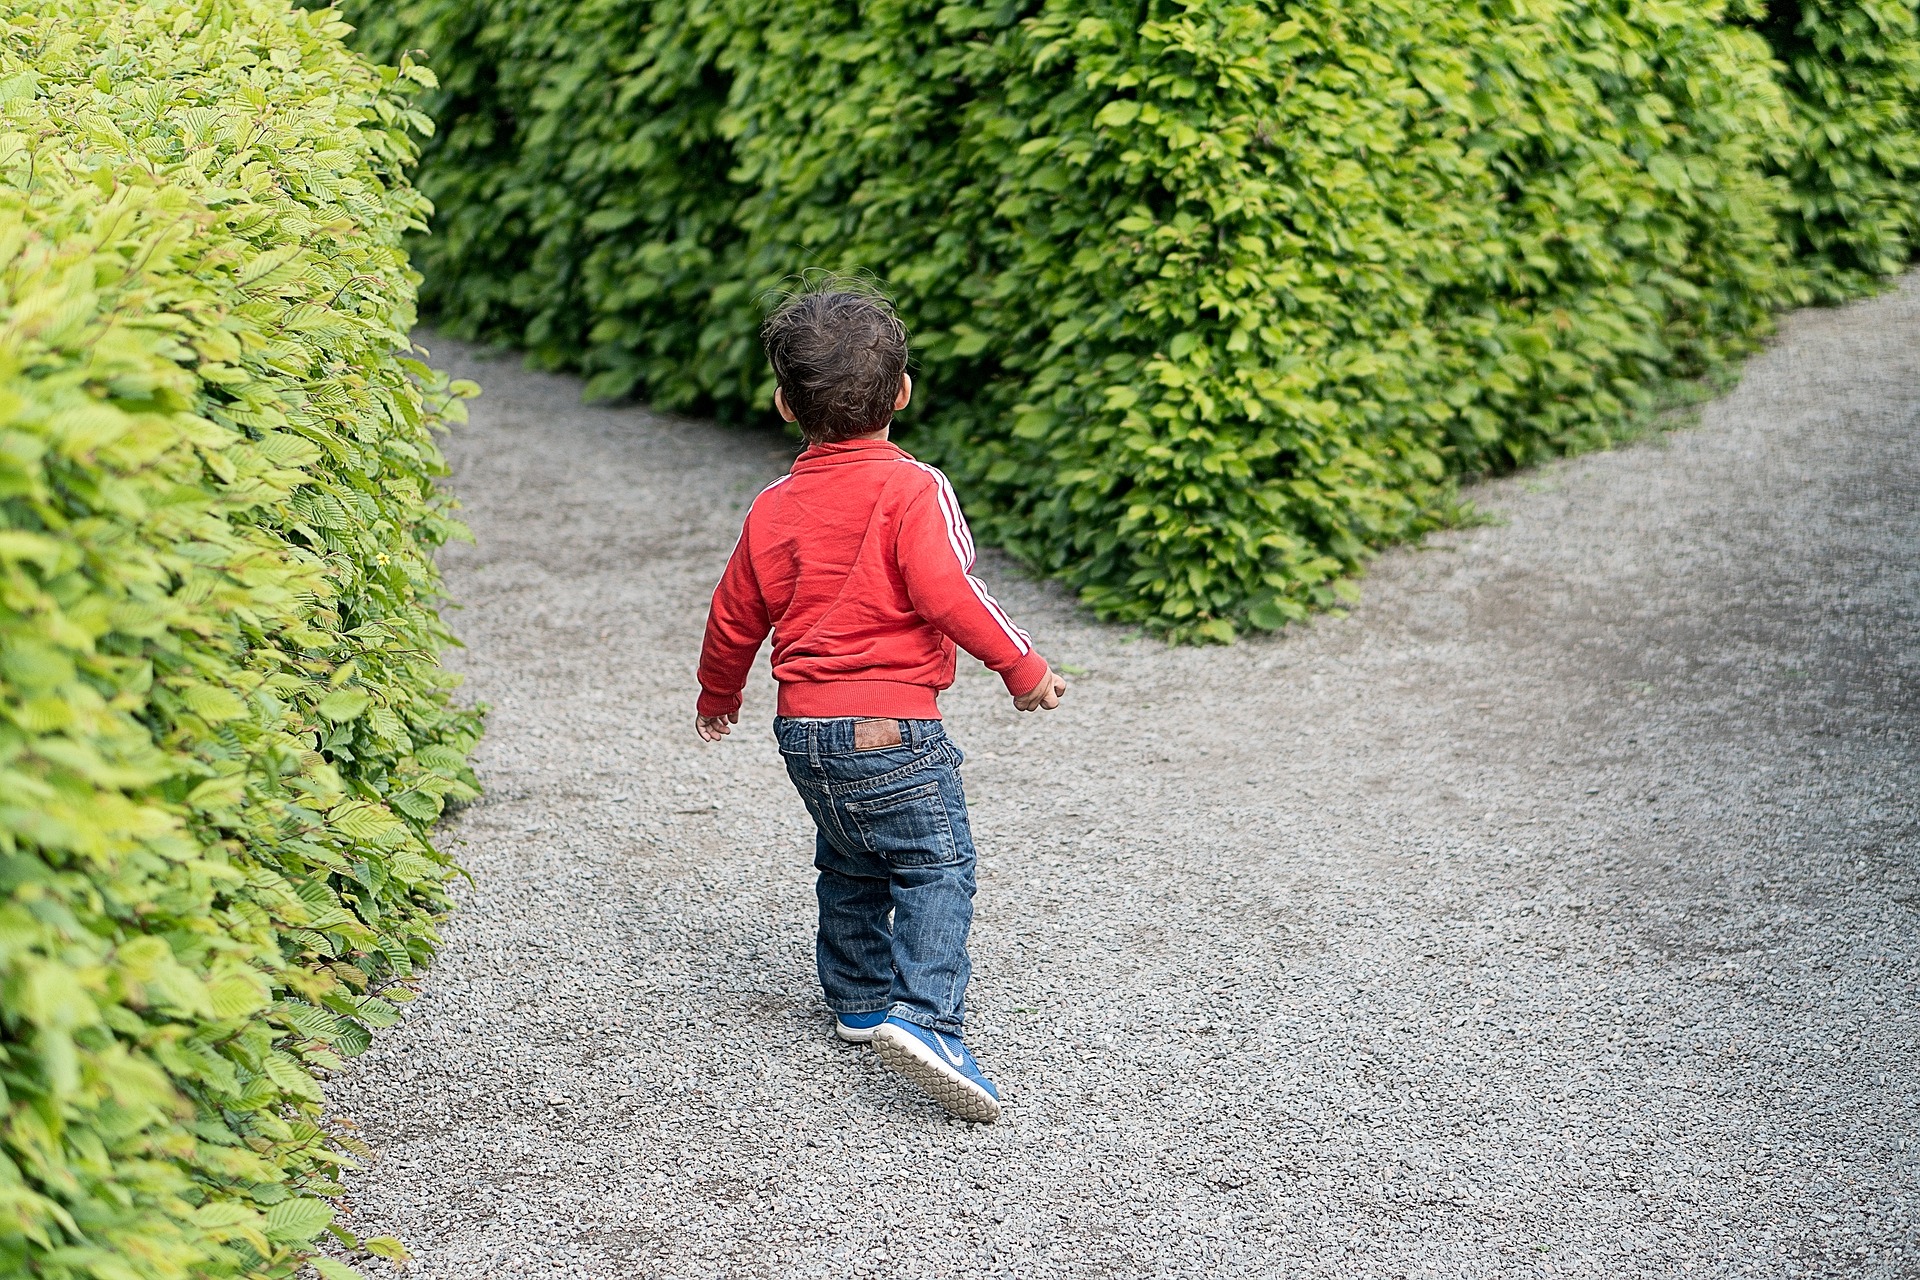 child at divergent paths